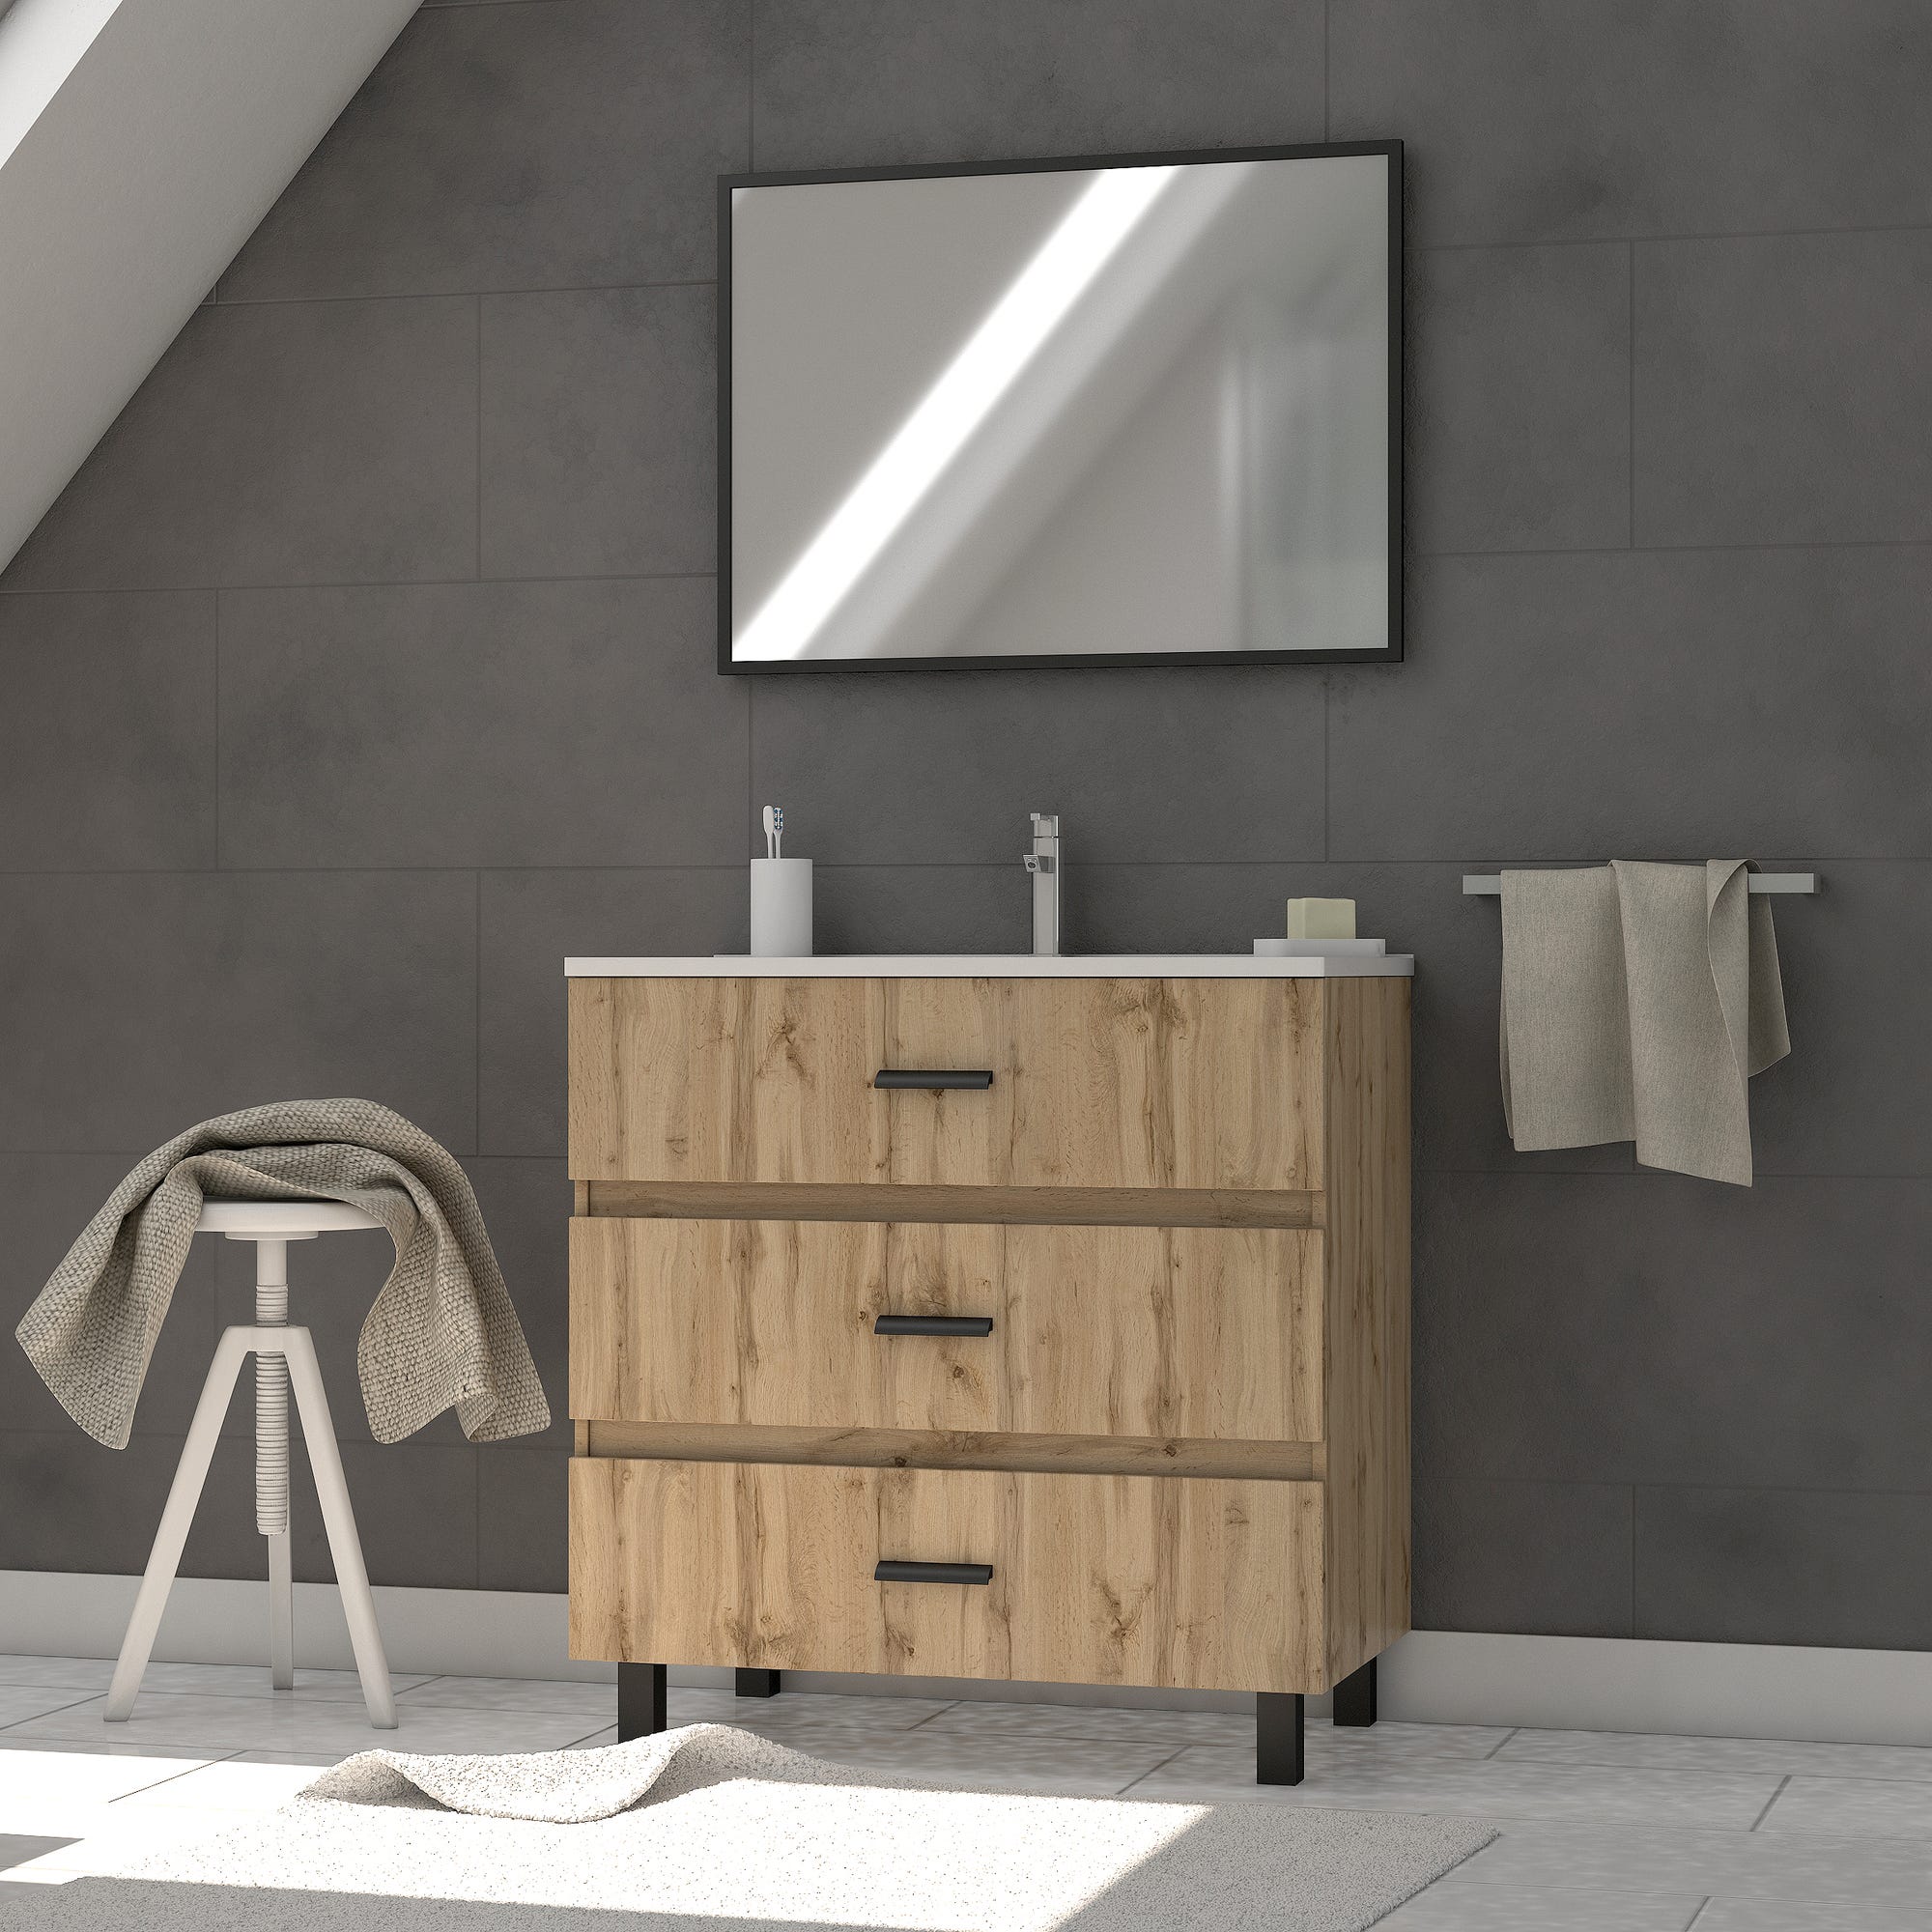 Ensemble meuble de salle de bain - Chene industriel - tiroirs -pieds en aluminium noir mat - miroir 0